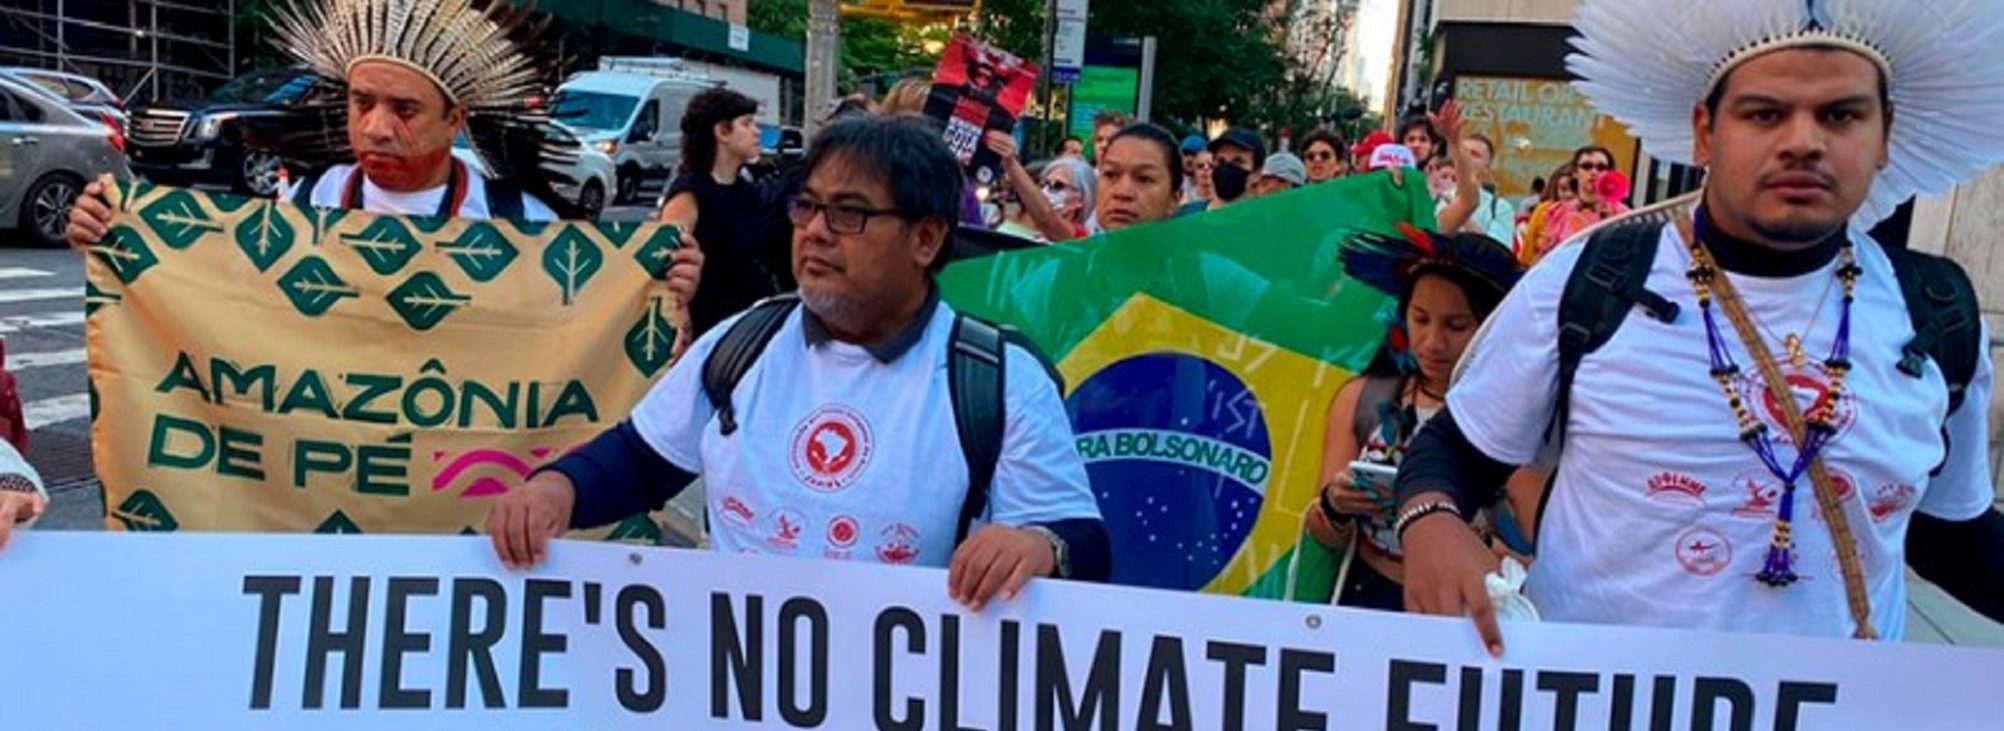 Manifestação em NY denuncia degradação ambiental e genocídio indígena no governo Bolsonaro